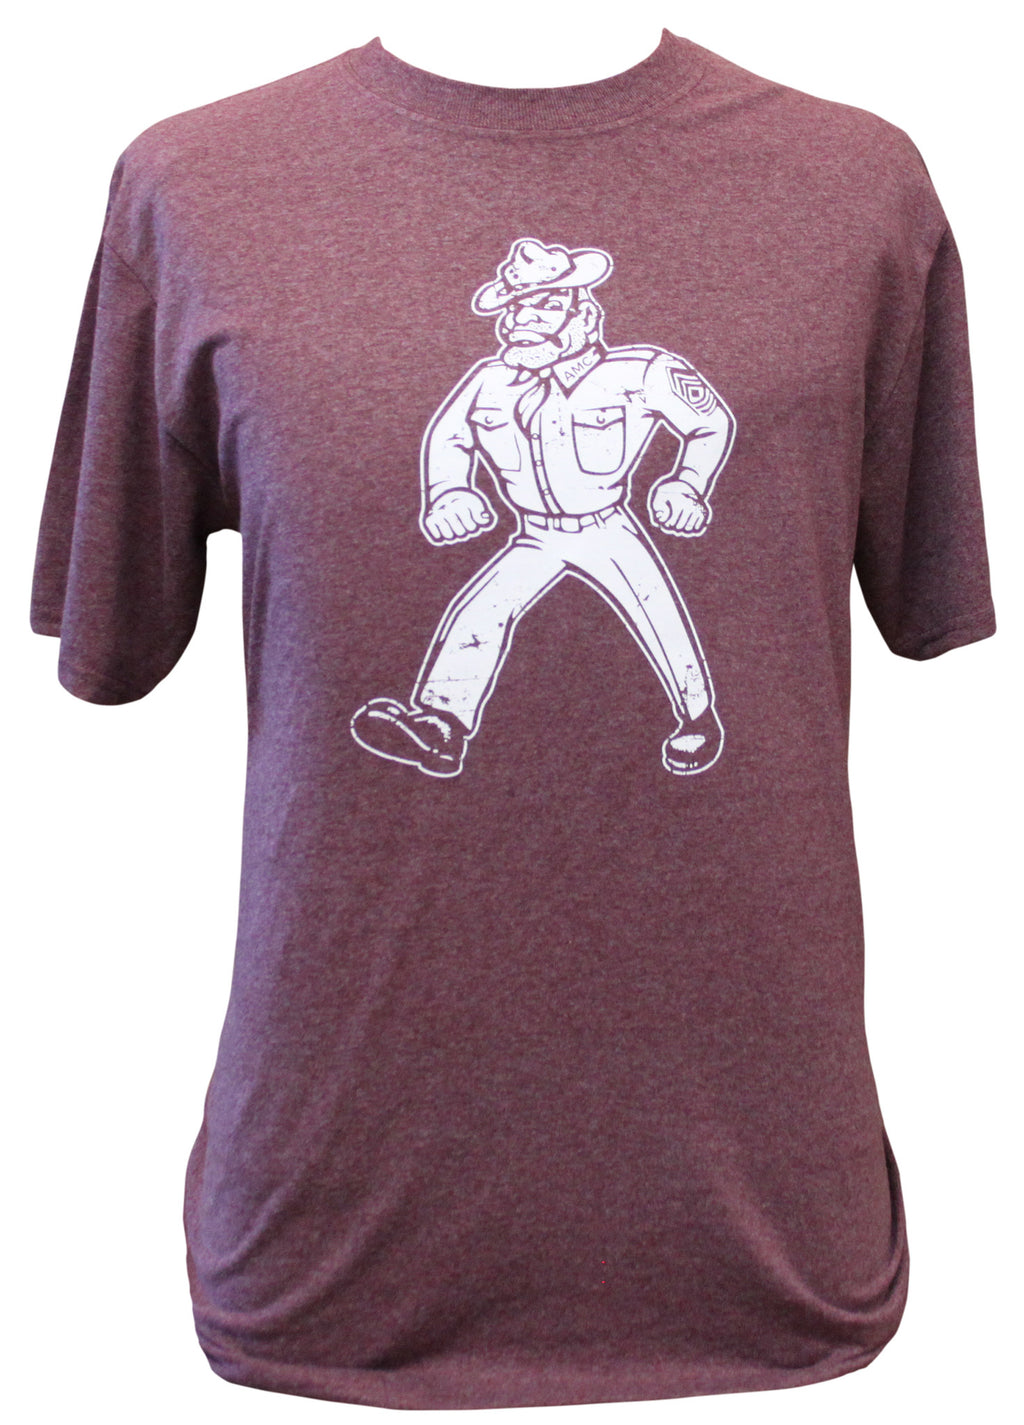 Ol' Sarge Vintage T-Shirt